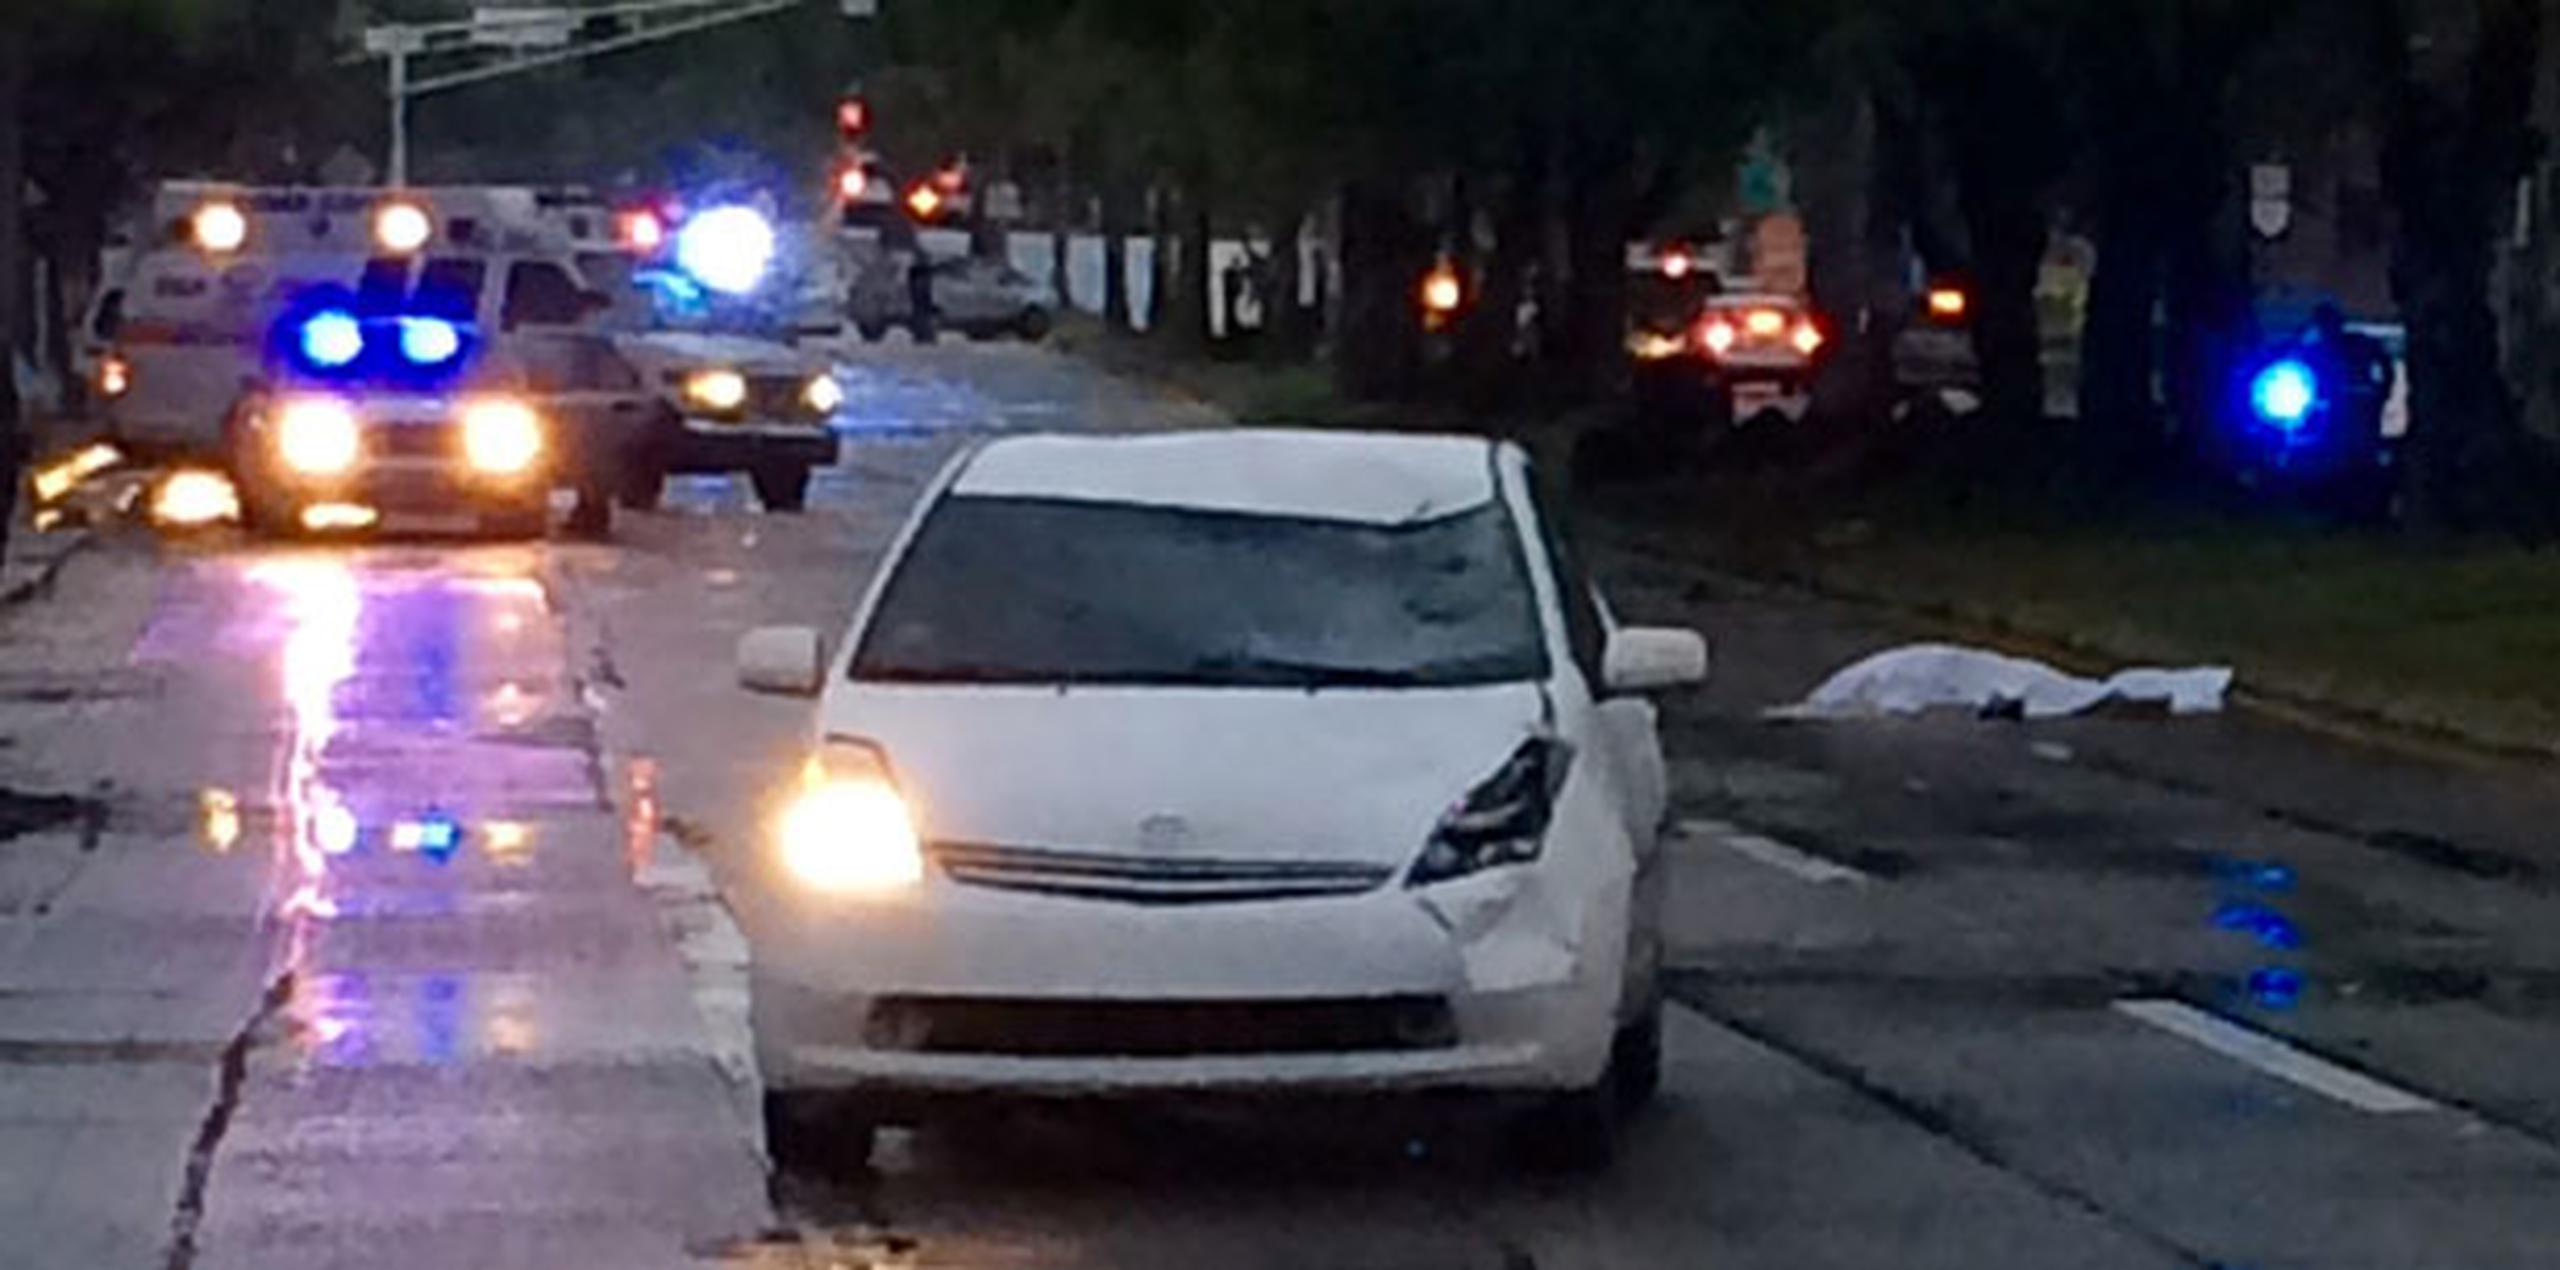 La investigación preliminar apunta a que un vehículo Toyota Prius, color blanco, arrolló a un peatón, que aún no ha sido identificado. (Suministrada)